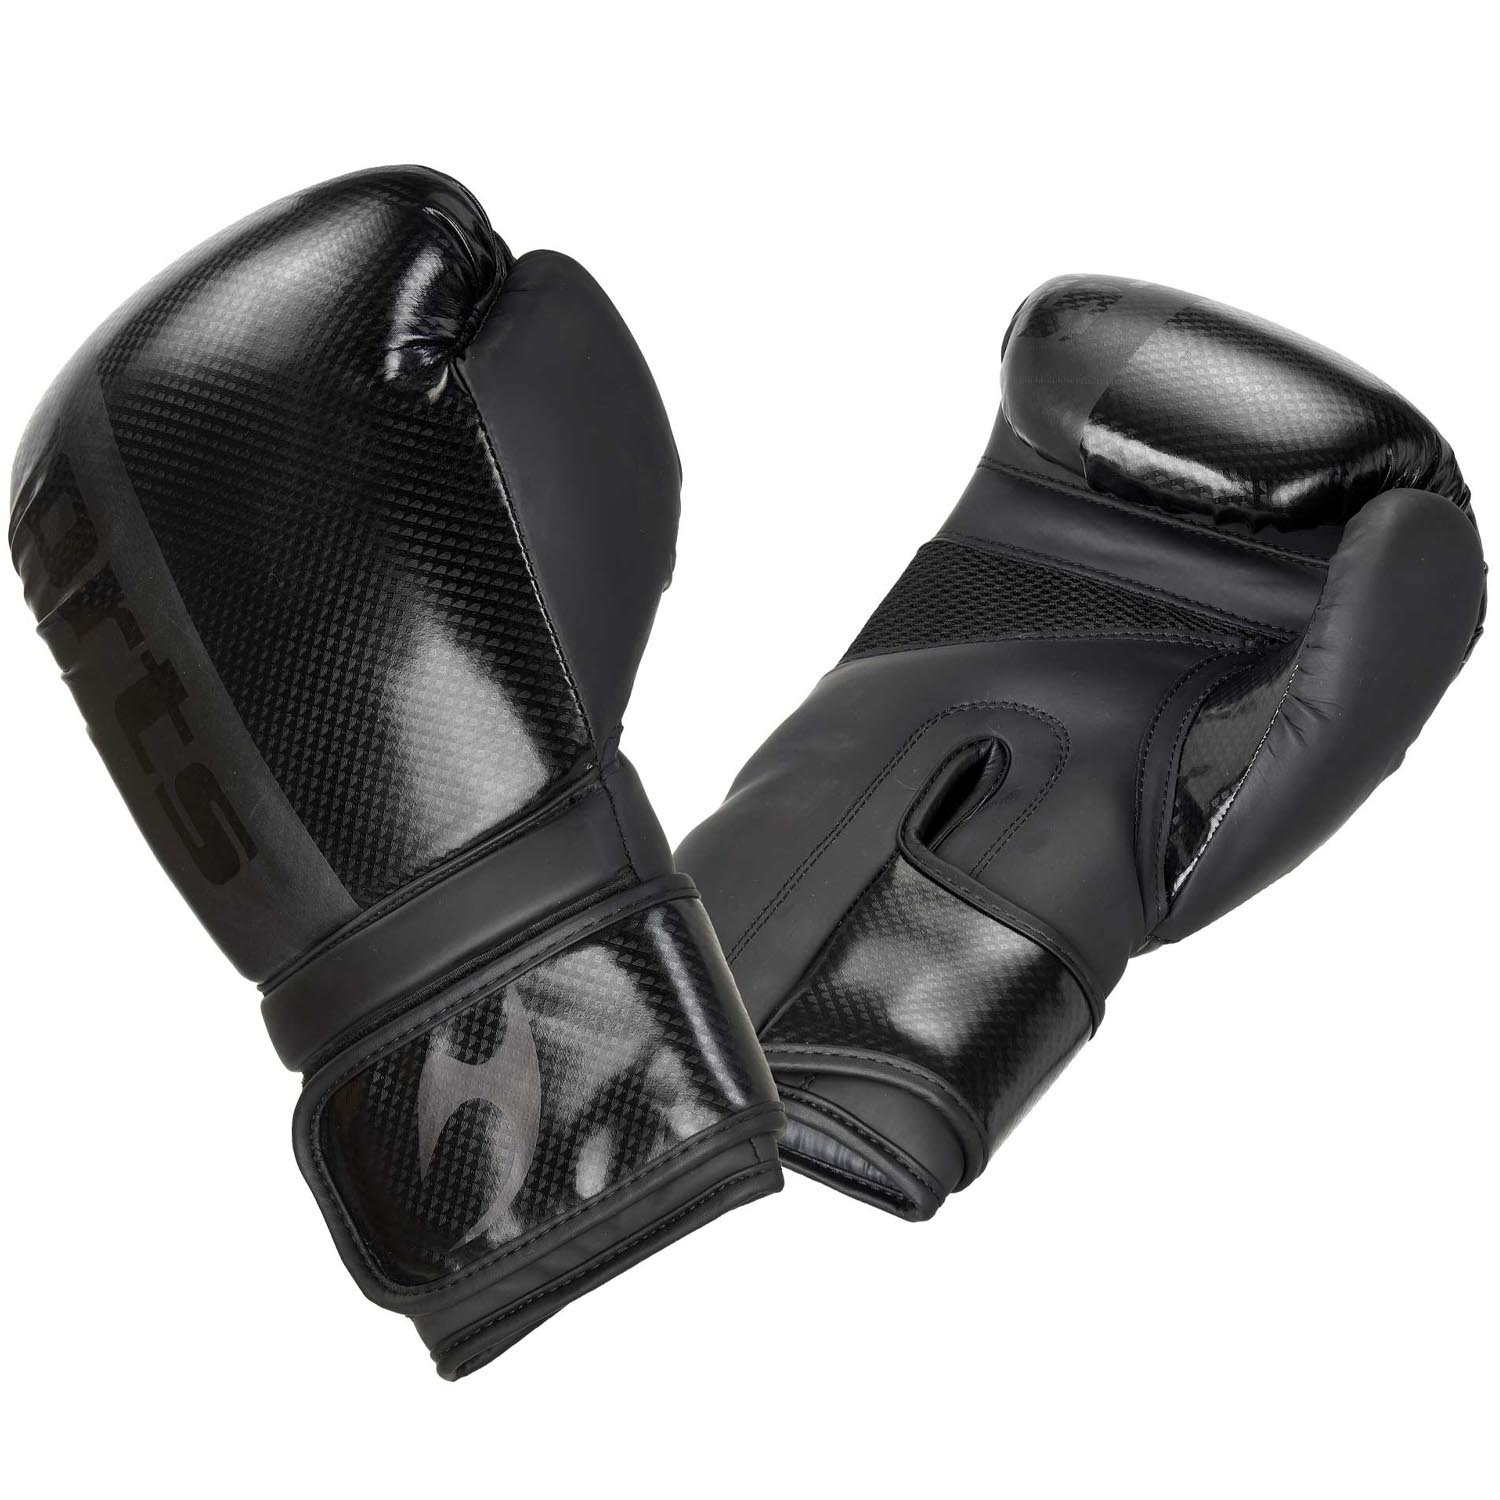 Ju-Sports Boxhandschuhe, Assassin, schwarz